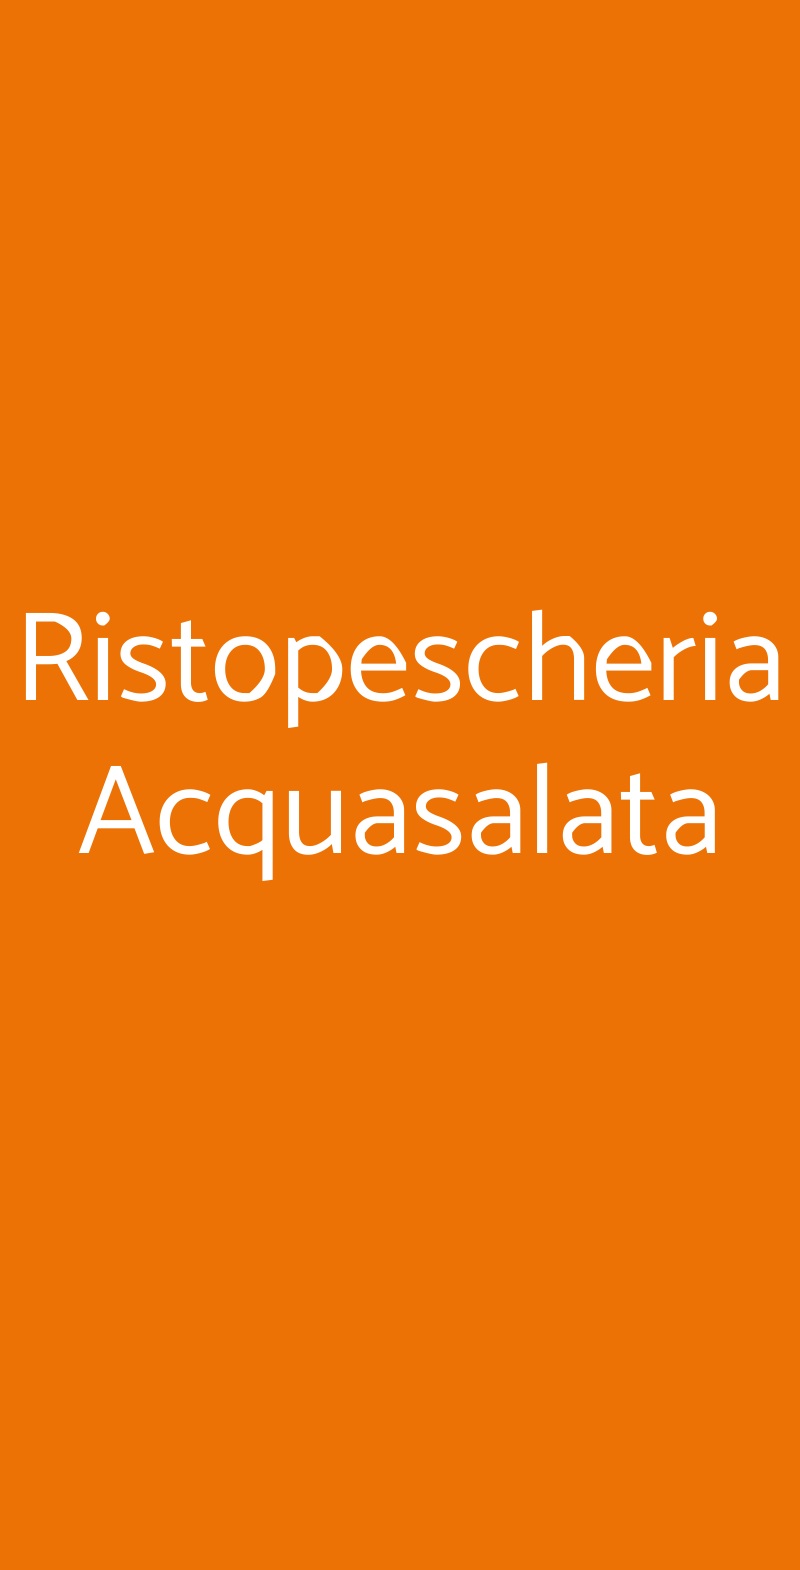 Ristopescheria Acquasalata Roma menù 1 pagina